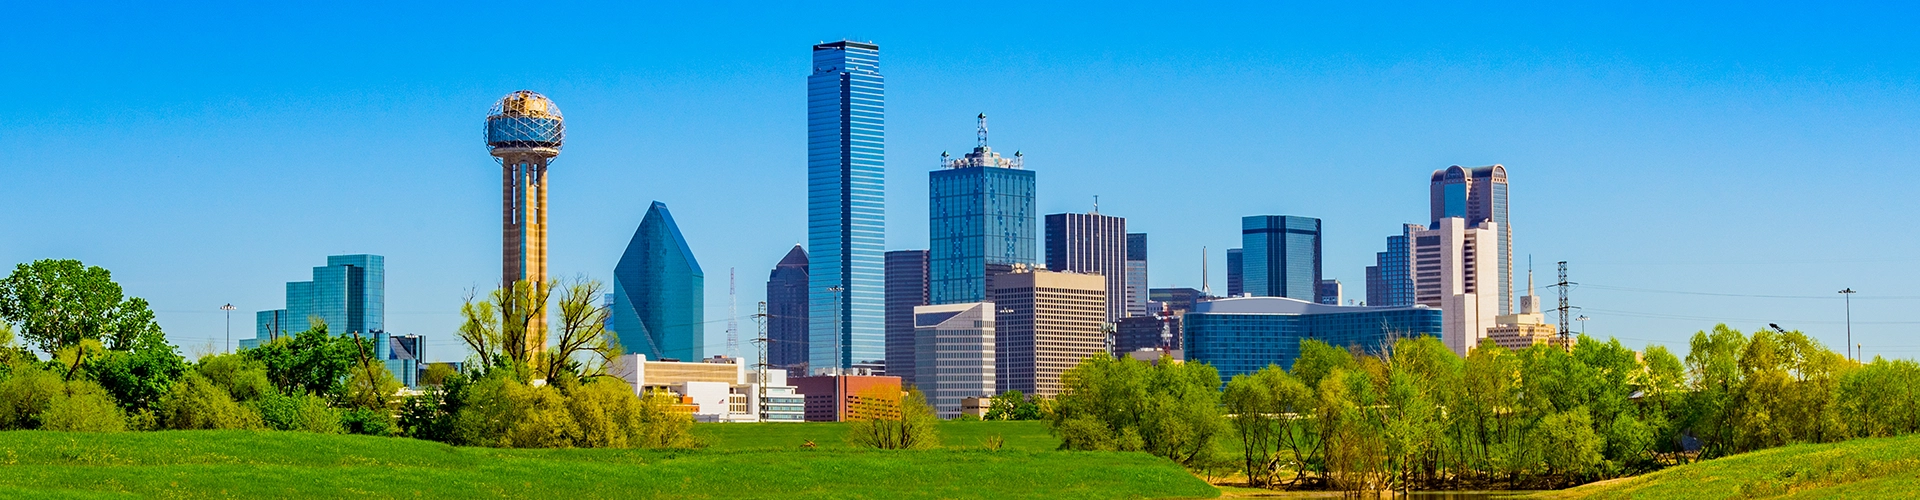 Header Image of Dallas